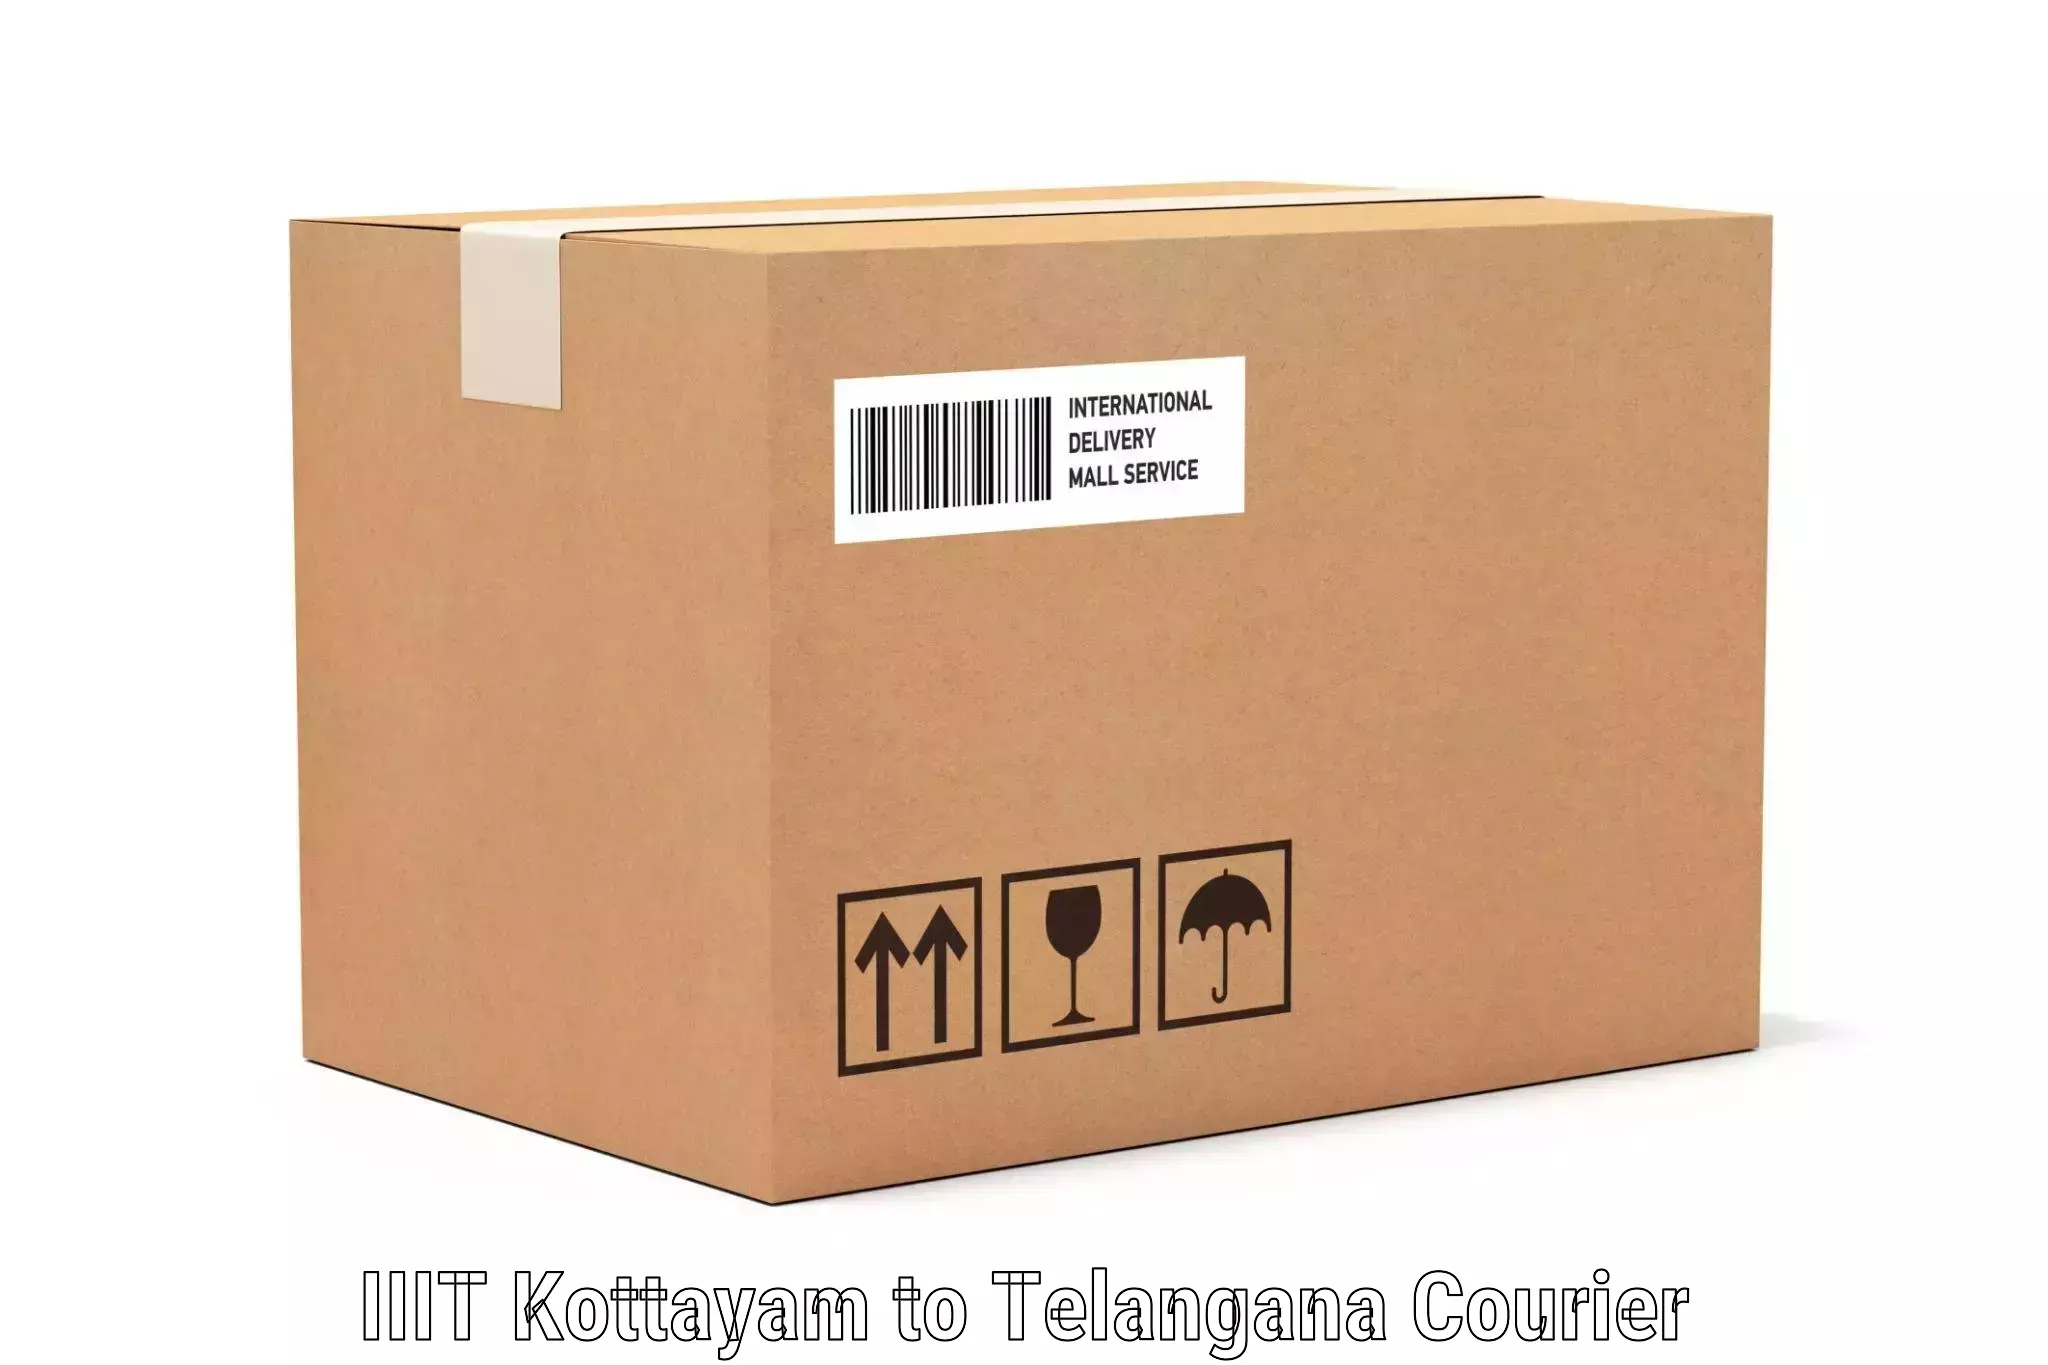 Luggage delivery news IIIT Kottayam to Hanamkonda